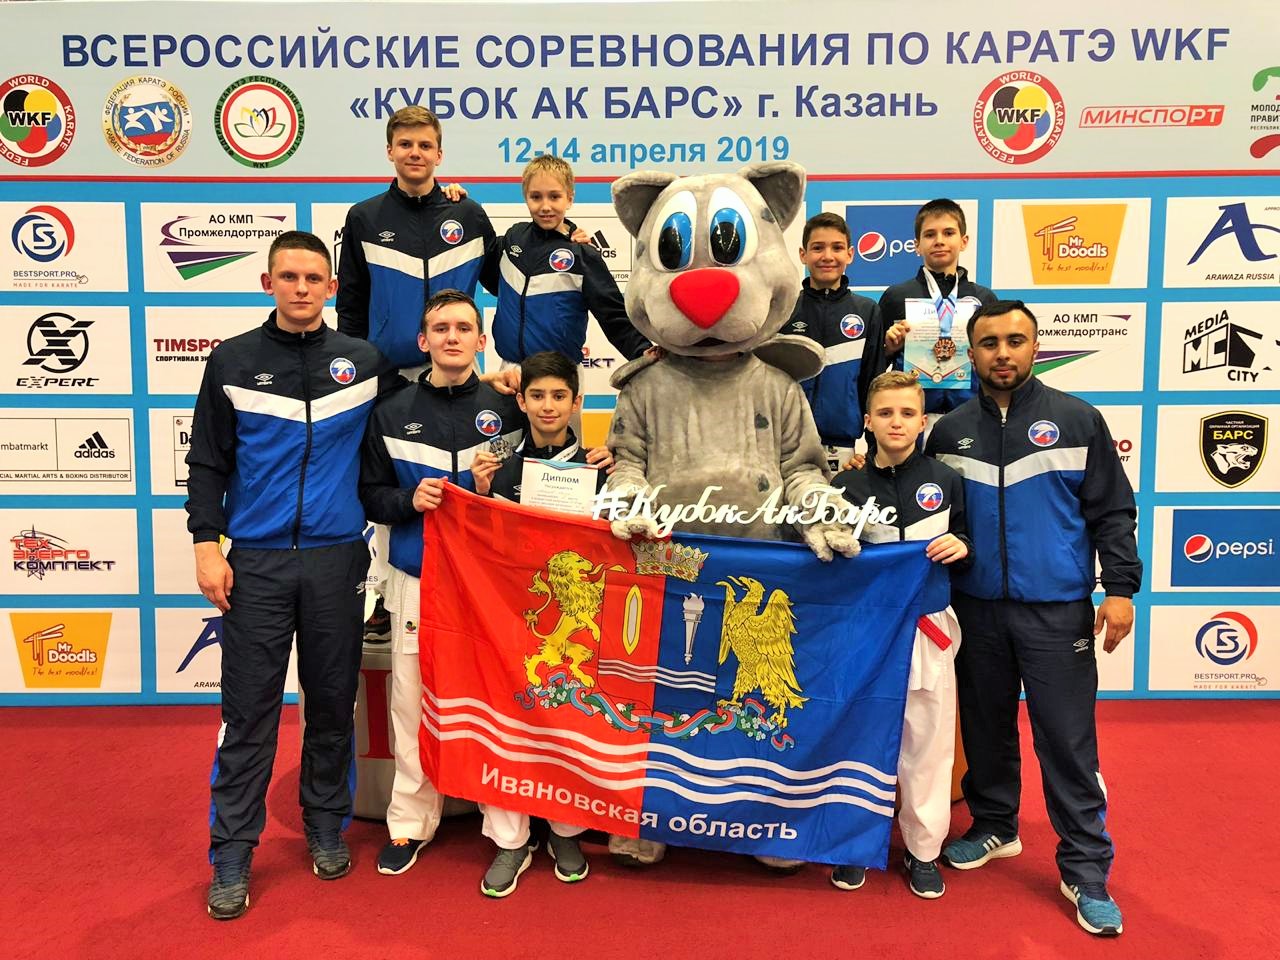 Сборная Ивановской области по каратэ вернулась с медалями со всероссийского турнира